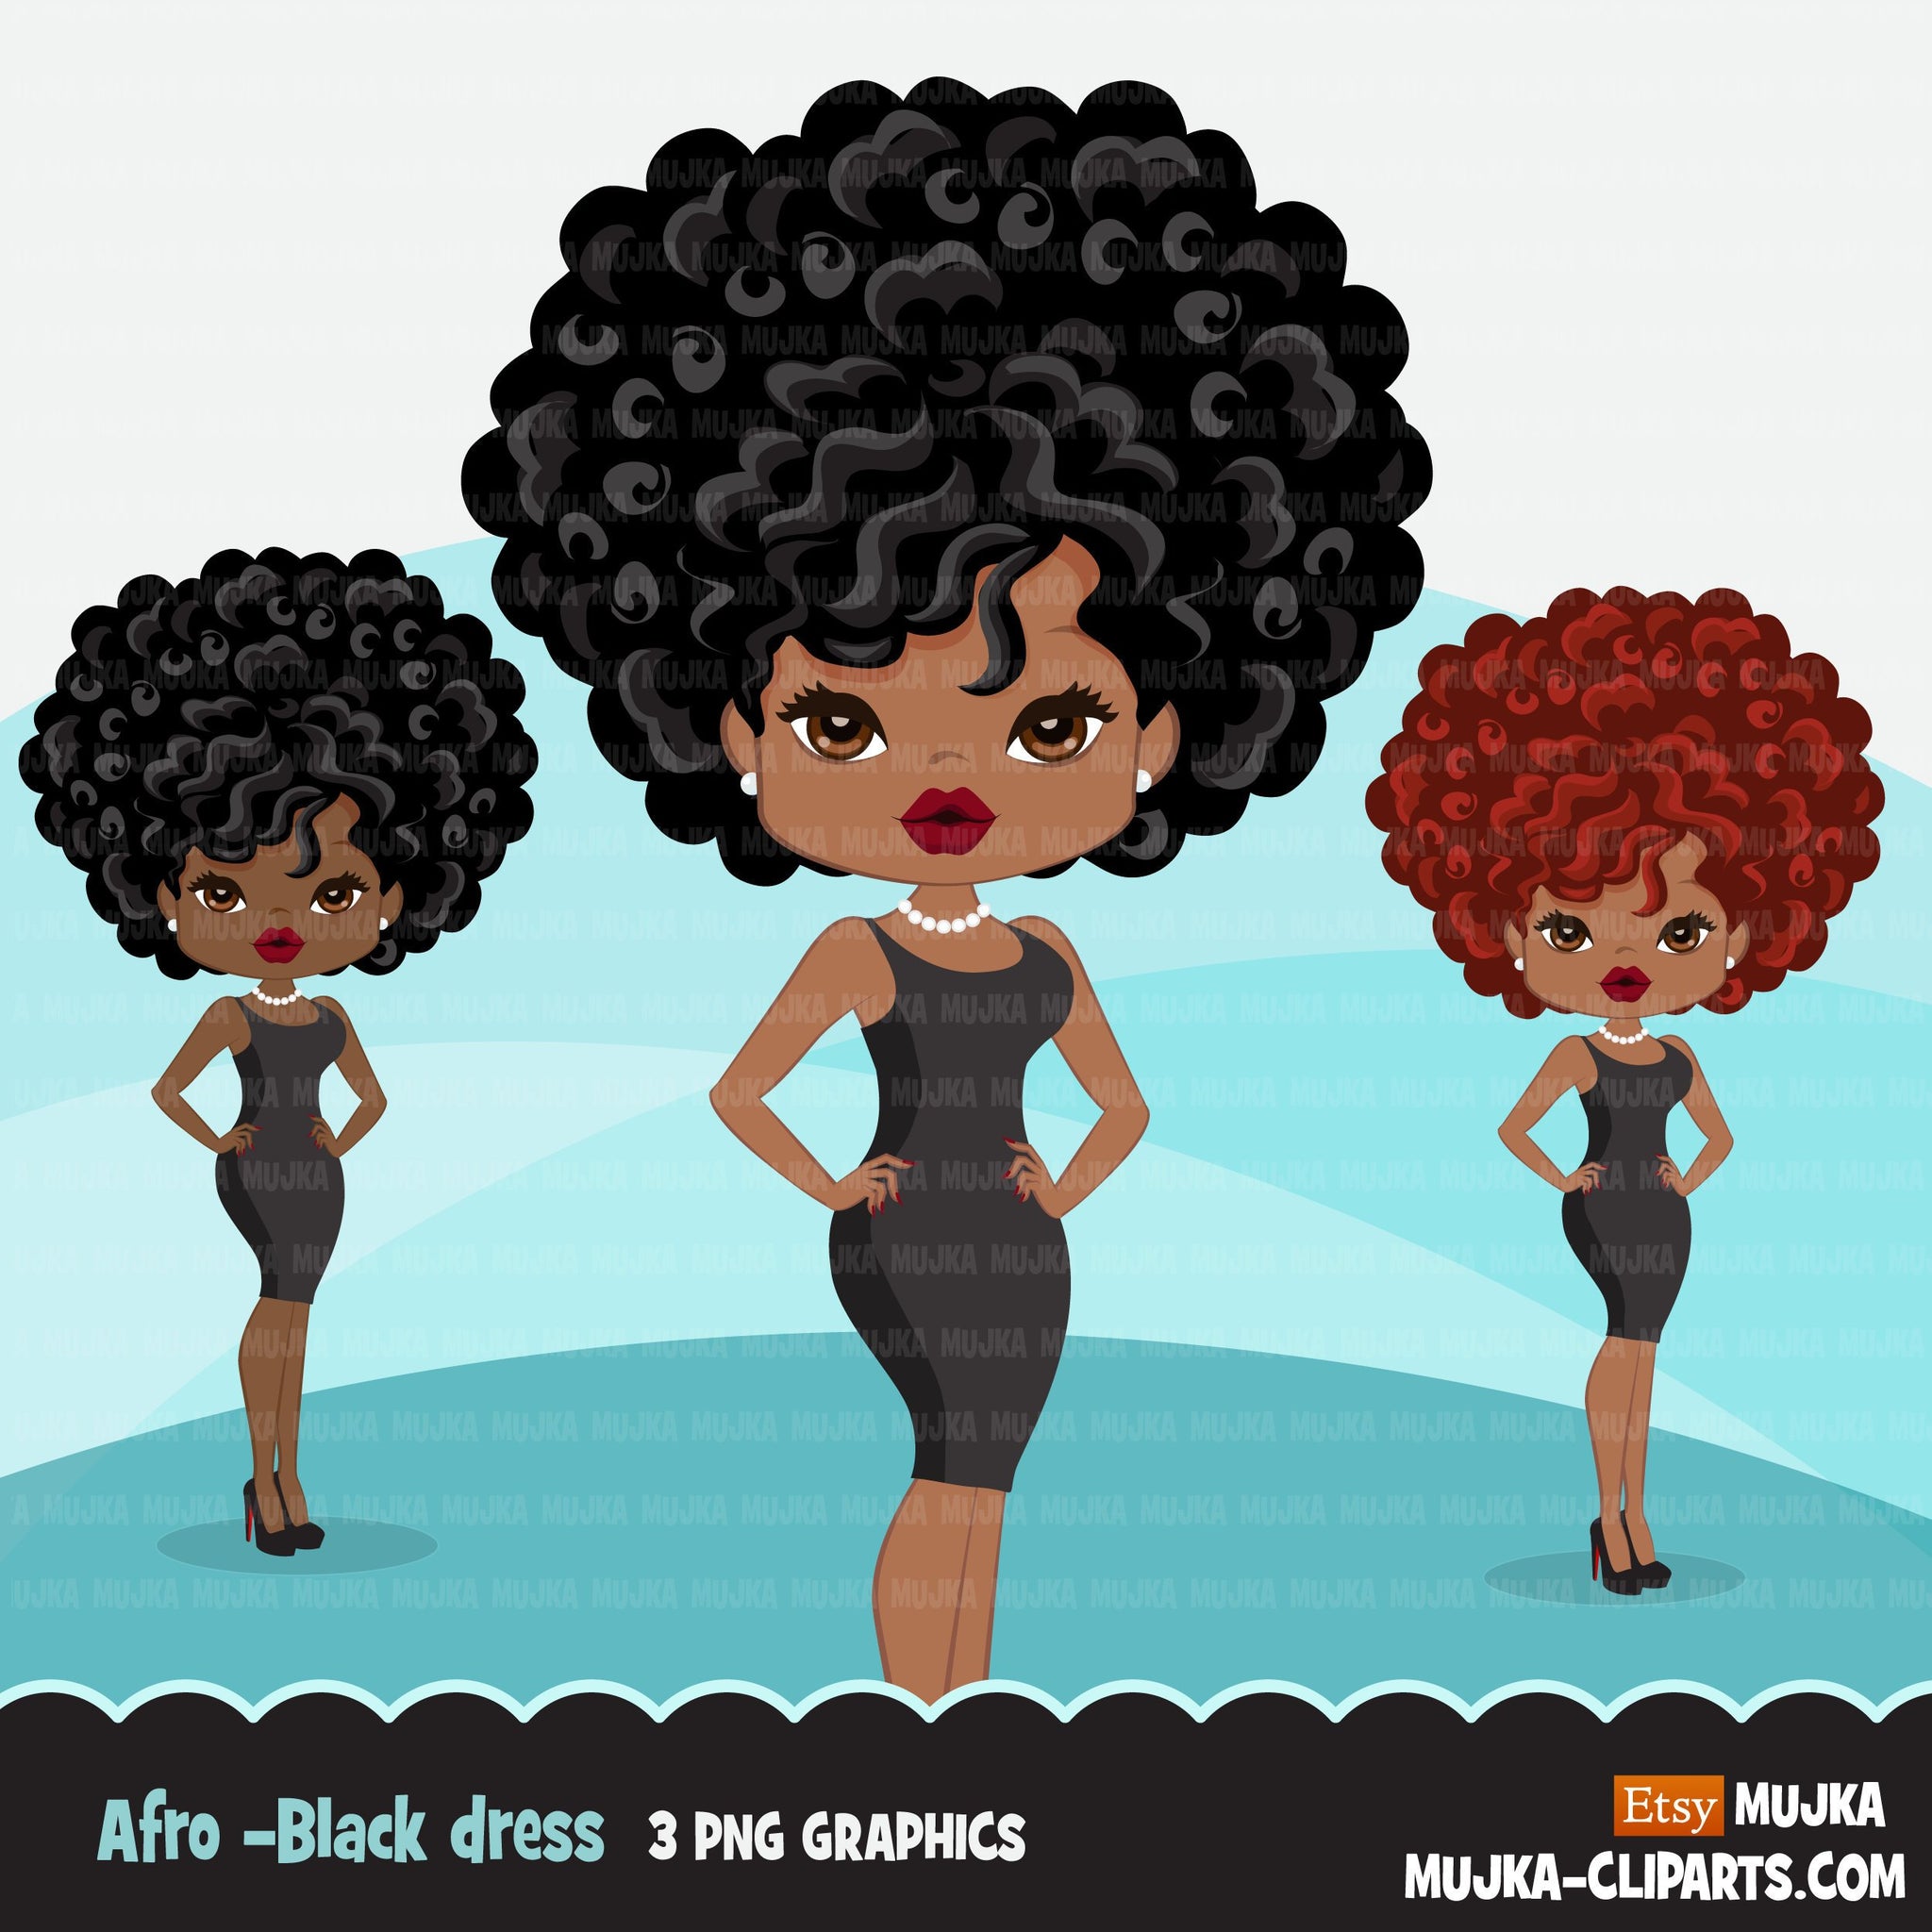 Imágenes prediseñadas de mujer afro negra con mini vestido negro, gráficos afroamericanos, diseños de camisetas PNG impresos y cortados, imágenes prediseñadas de Black Girls